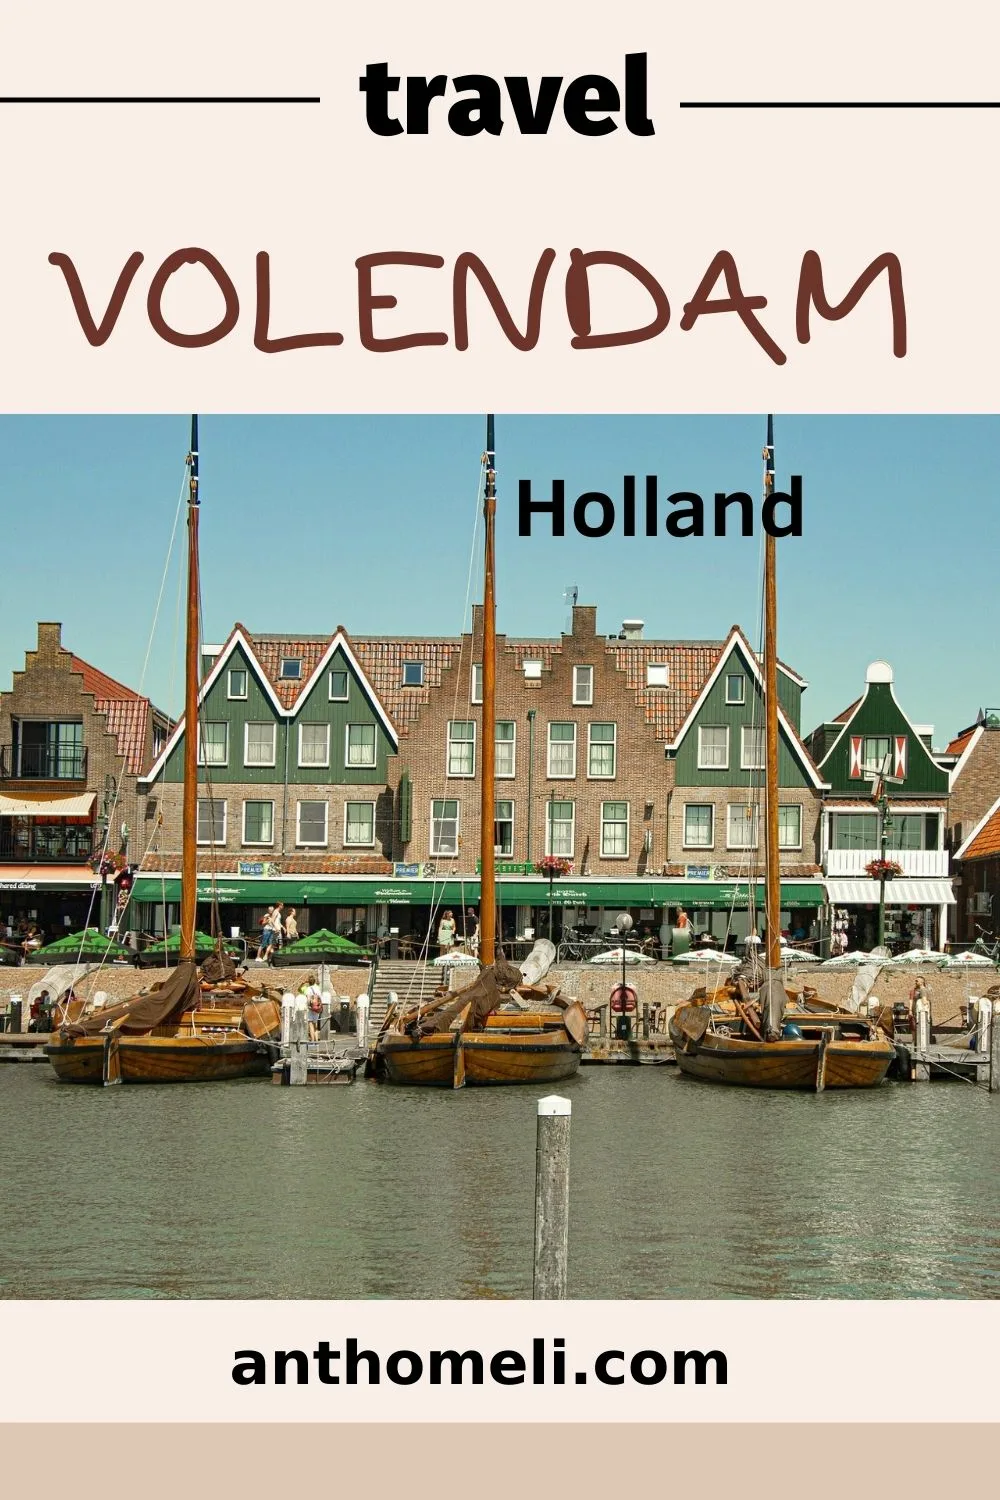 Το Βόλενταμ απέχει 20 χλμ. από το Άμστερνταμ και είναι ιδανικός προορισμός για μια  εκδρομή. Αξιοθέατα, μουσεία, ξύλινα σπίτια, παλιά πλοία και φαγητό με ψάρια.